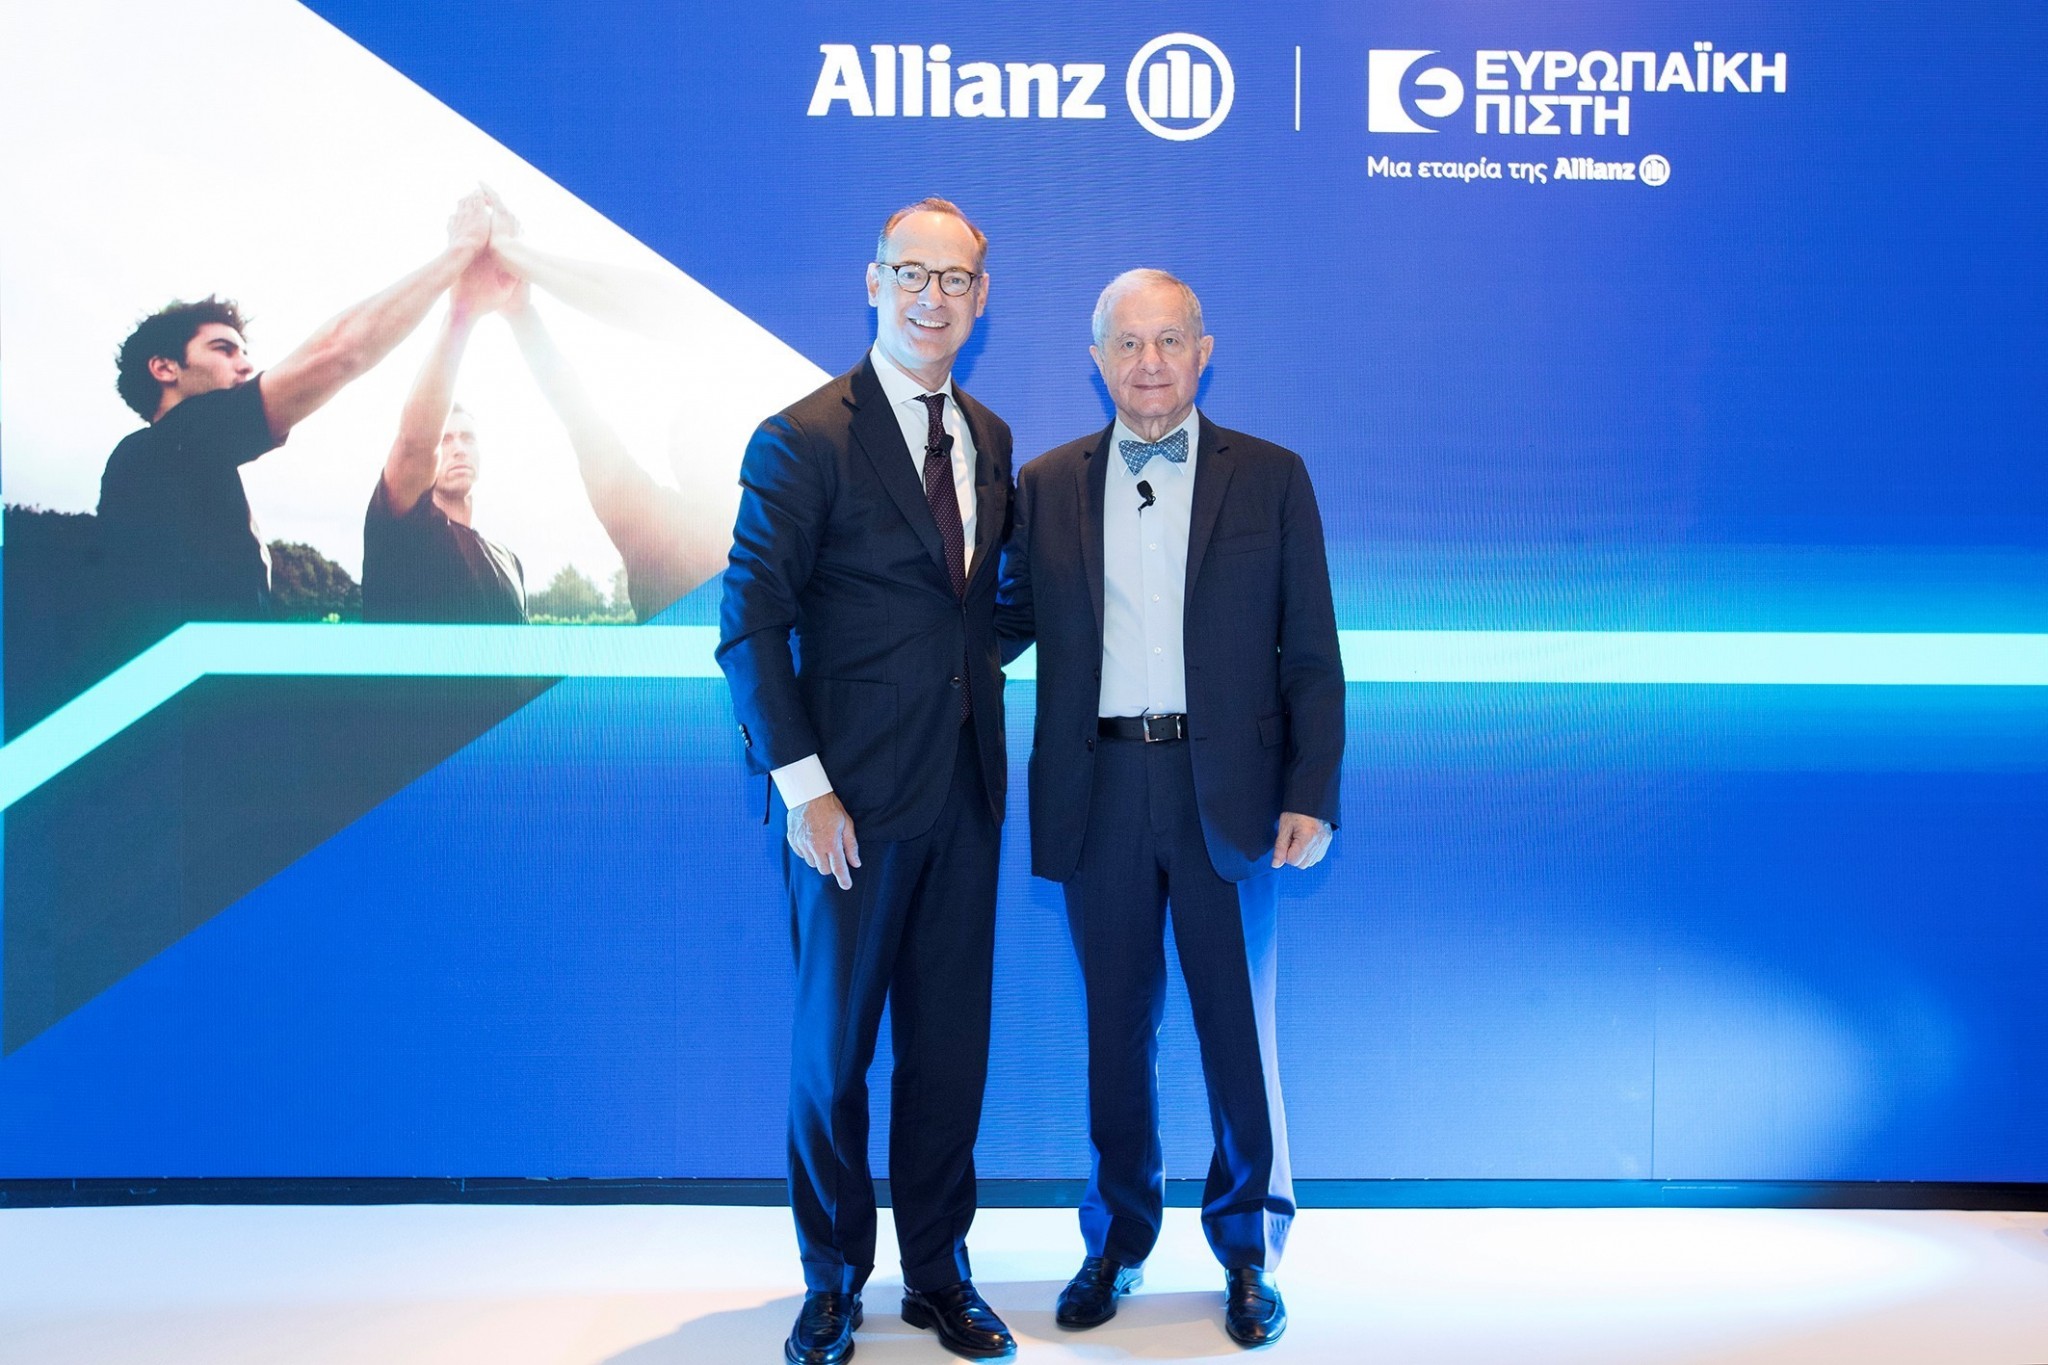 Το σχέδιο των Γερμανών της Allianz για την Ευρωπαϊκή Πίστη